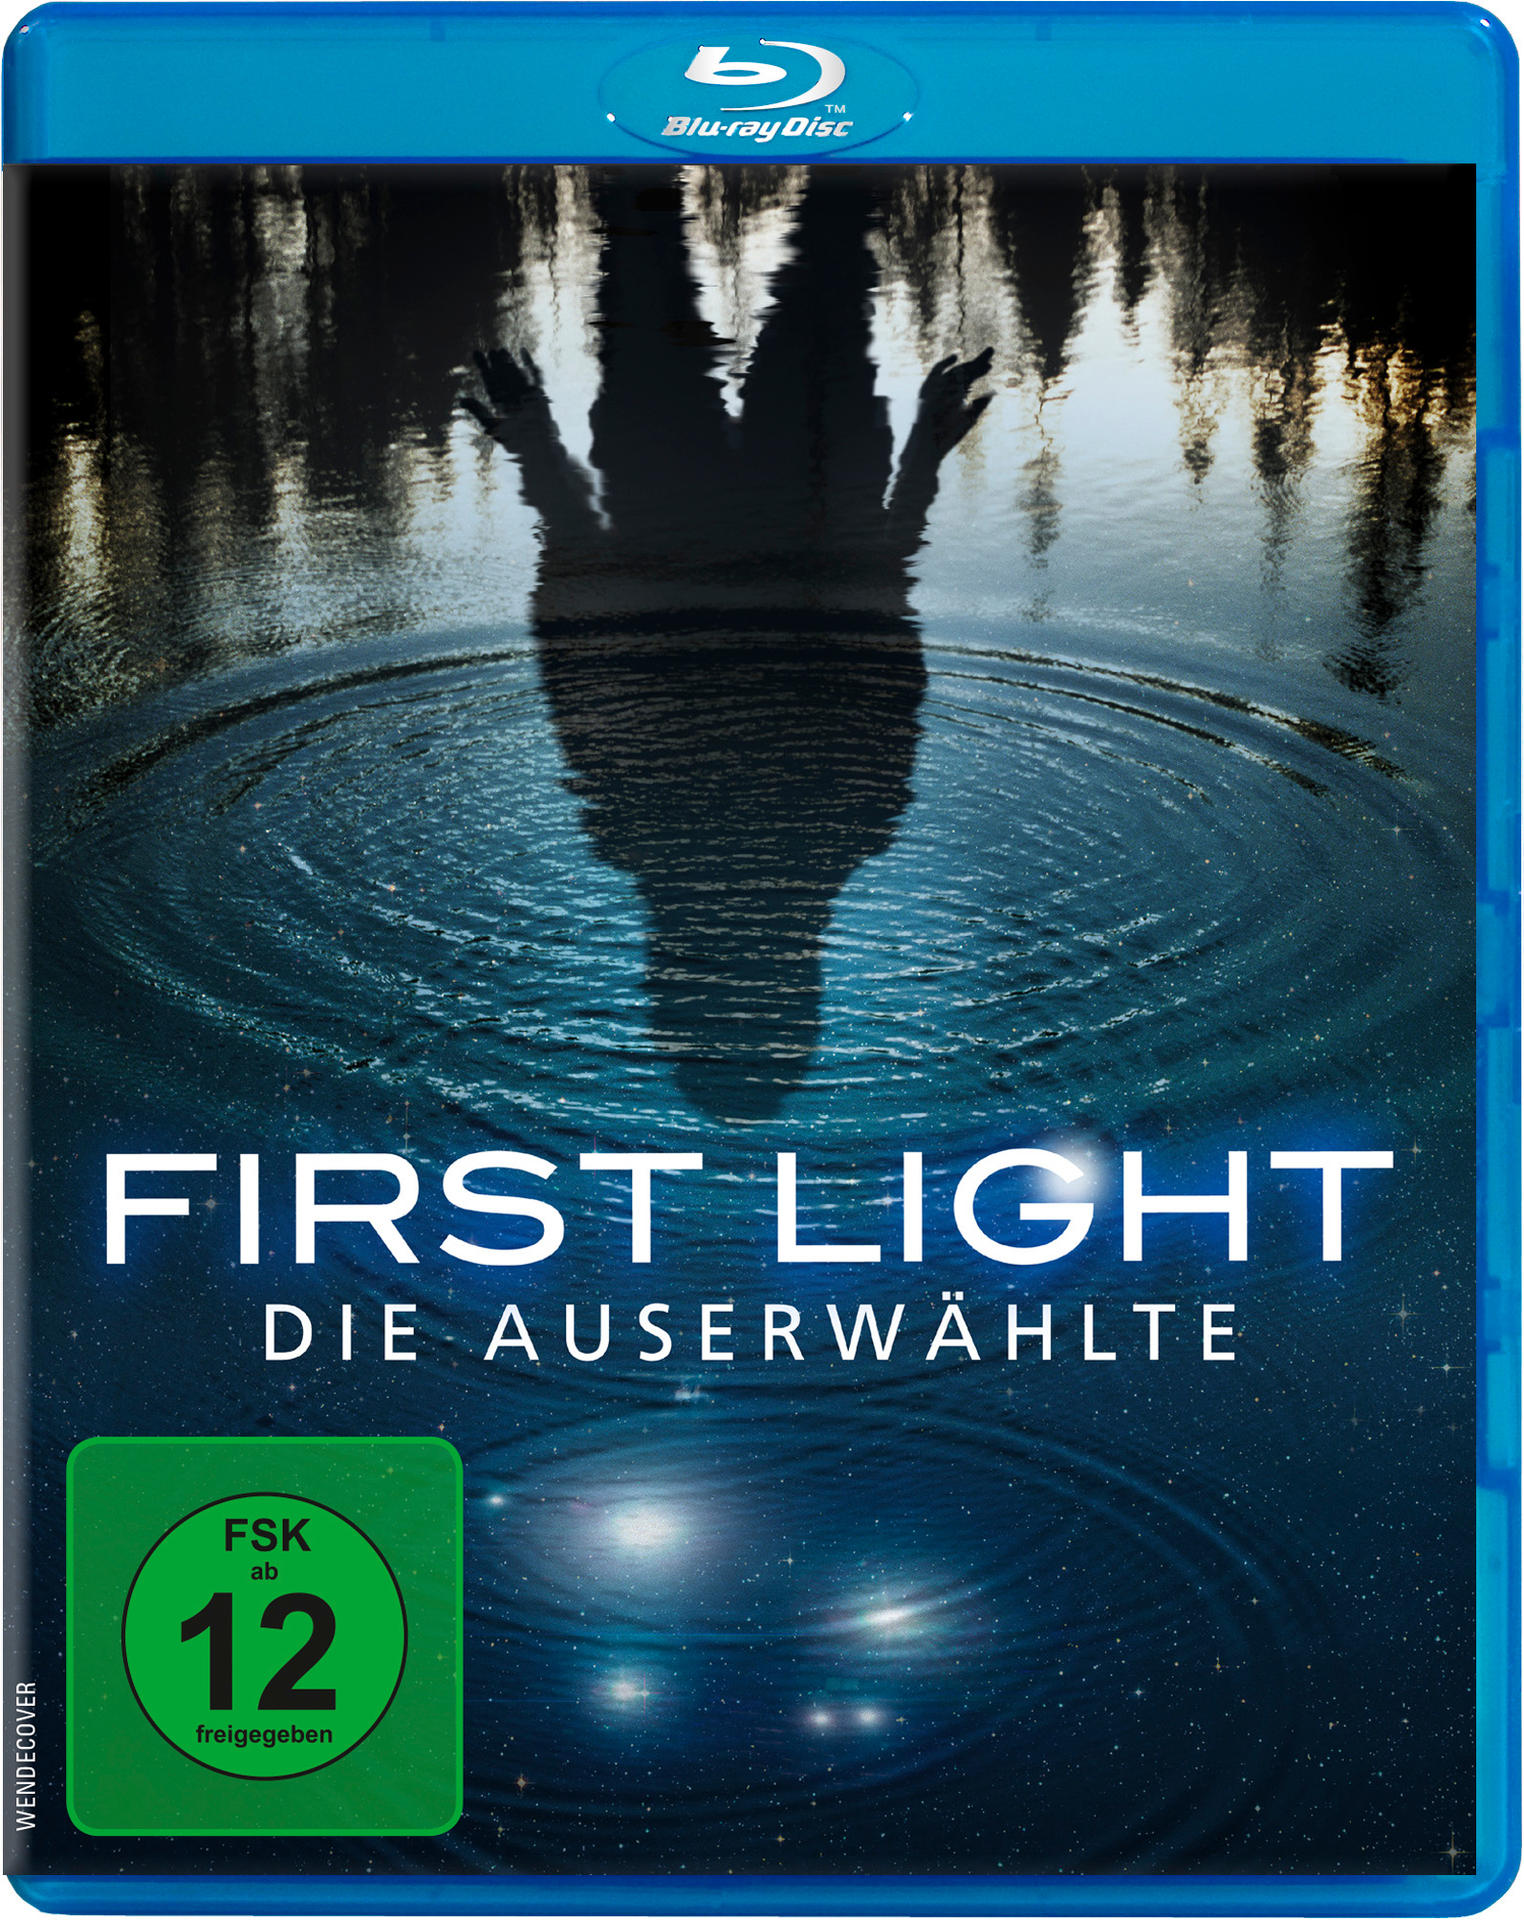 First Light - Auserwählte Die Blu-ray